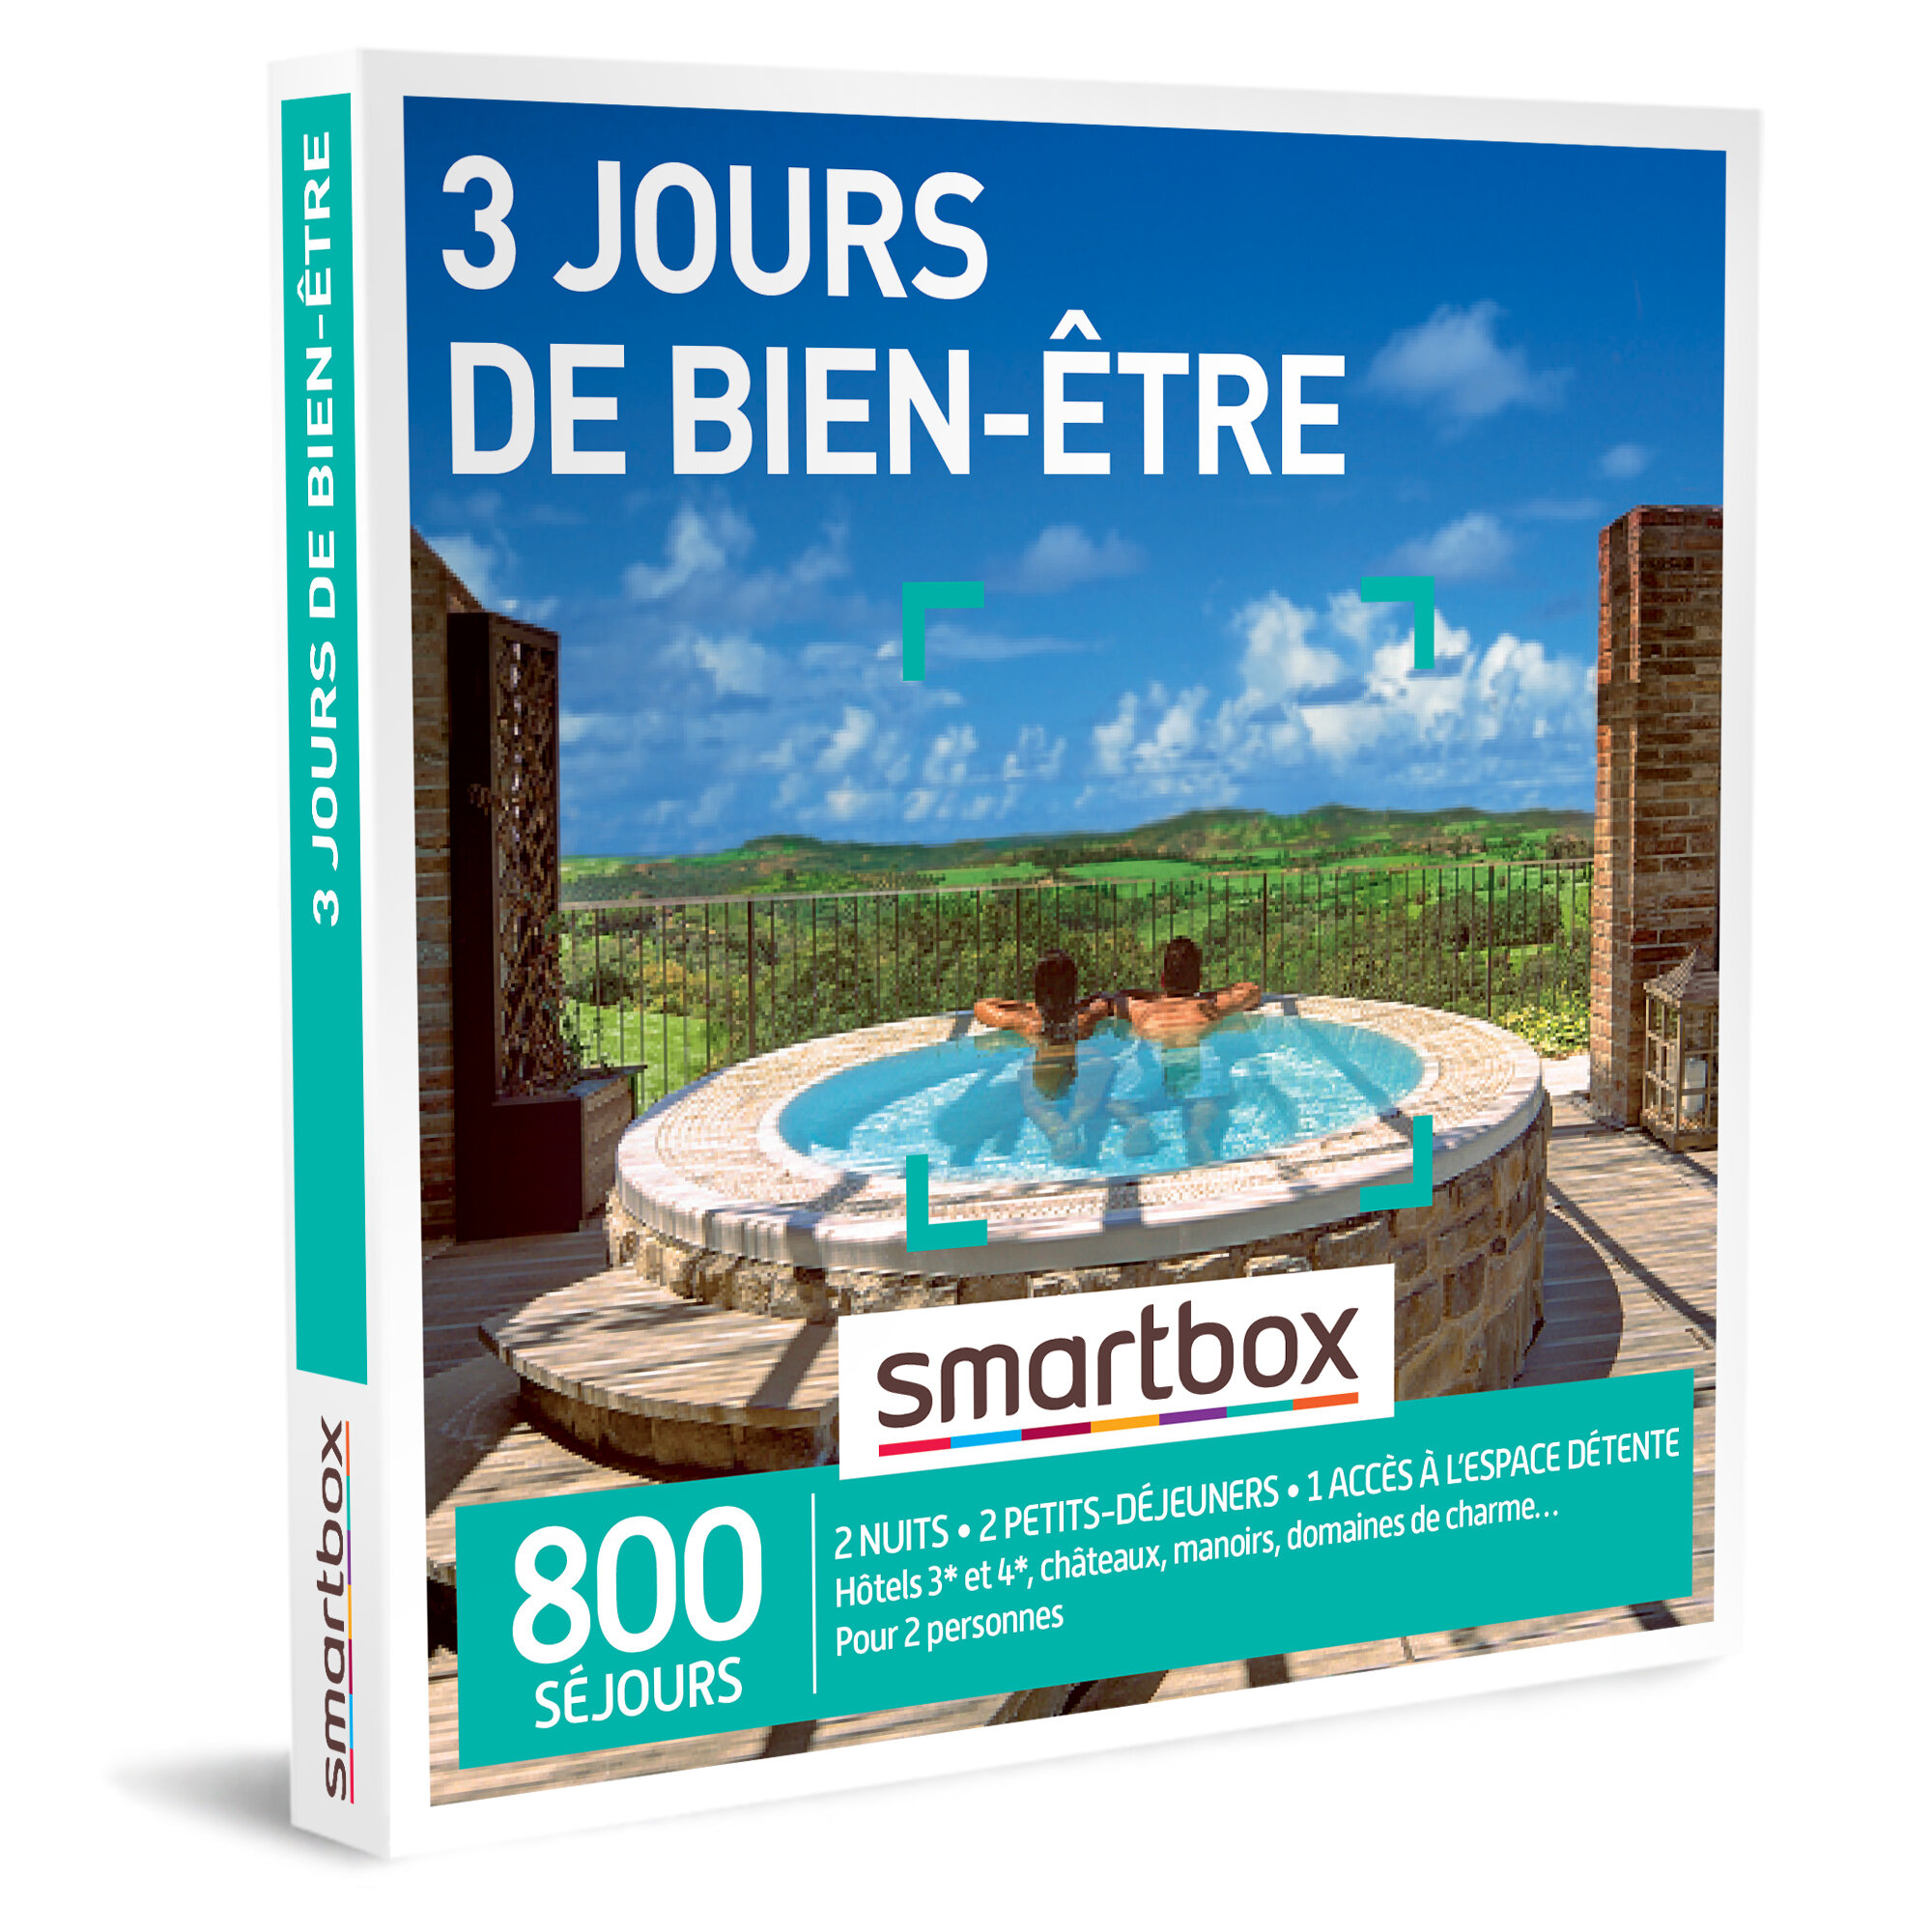 SMARTBOX - Coffret Cadeau - 3 JOURS DE BIEN-ÊTRE - 2 nuits avec petits-déjeuners et 1 accès à l’espace détente pour 2 personnes